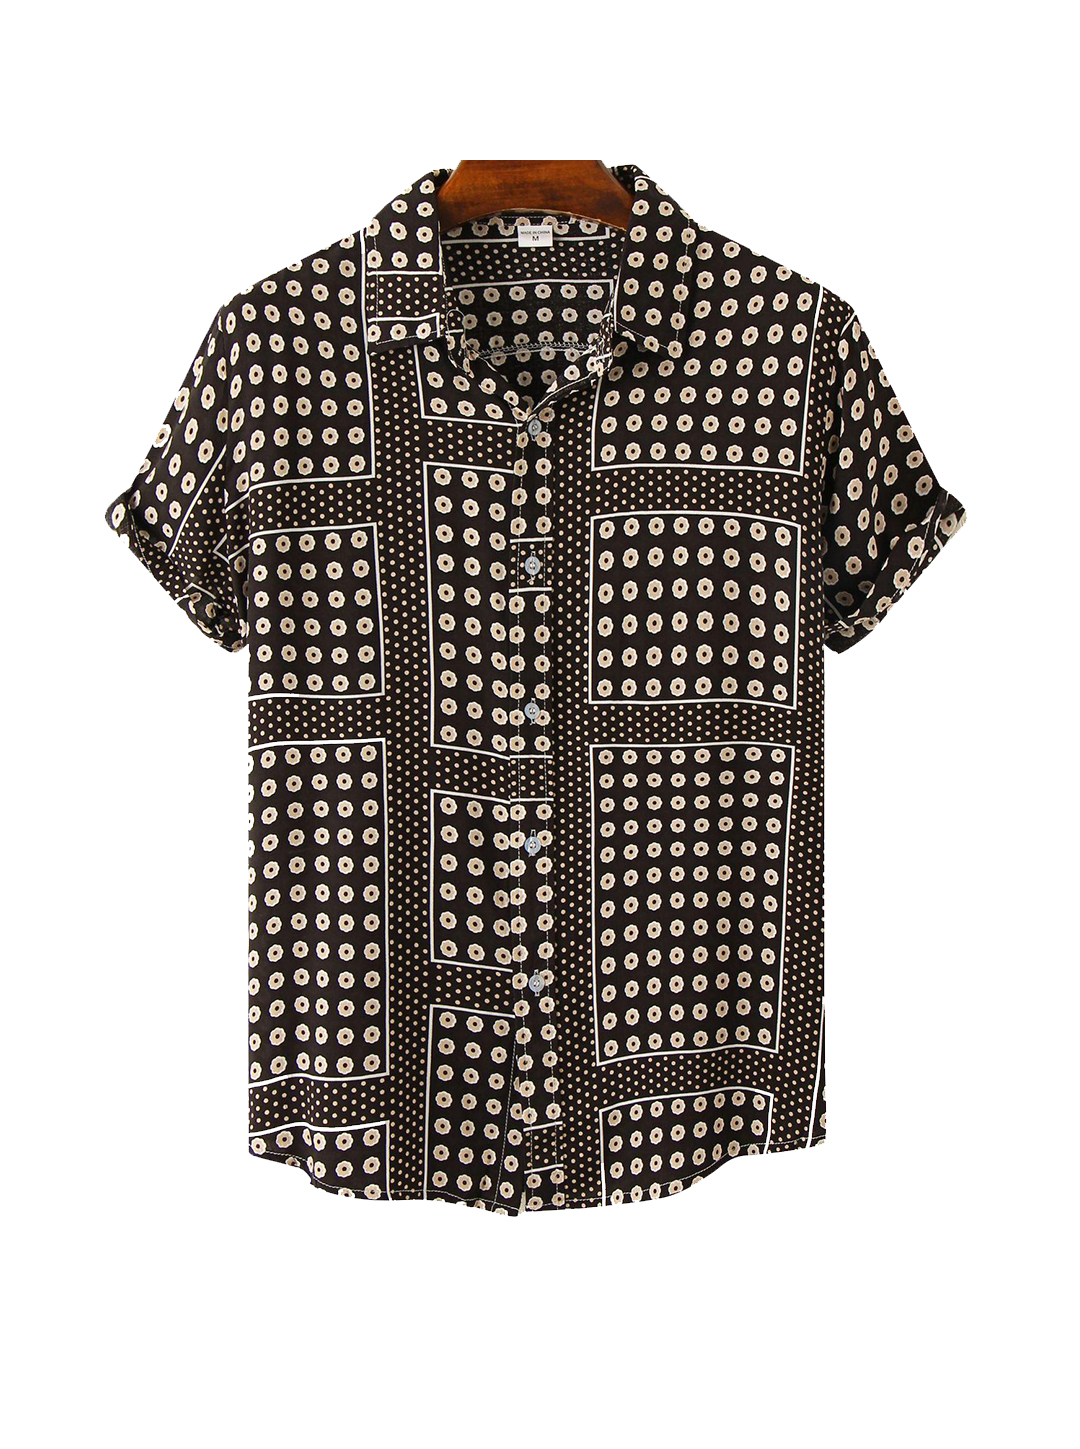 James Polka Dots Printing Short Sleeve Shirt